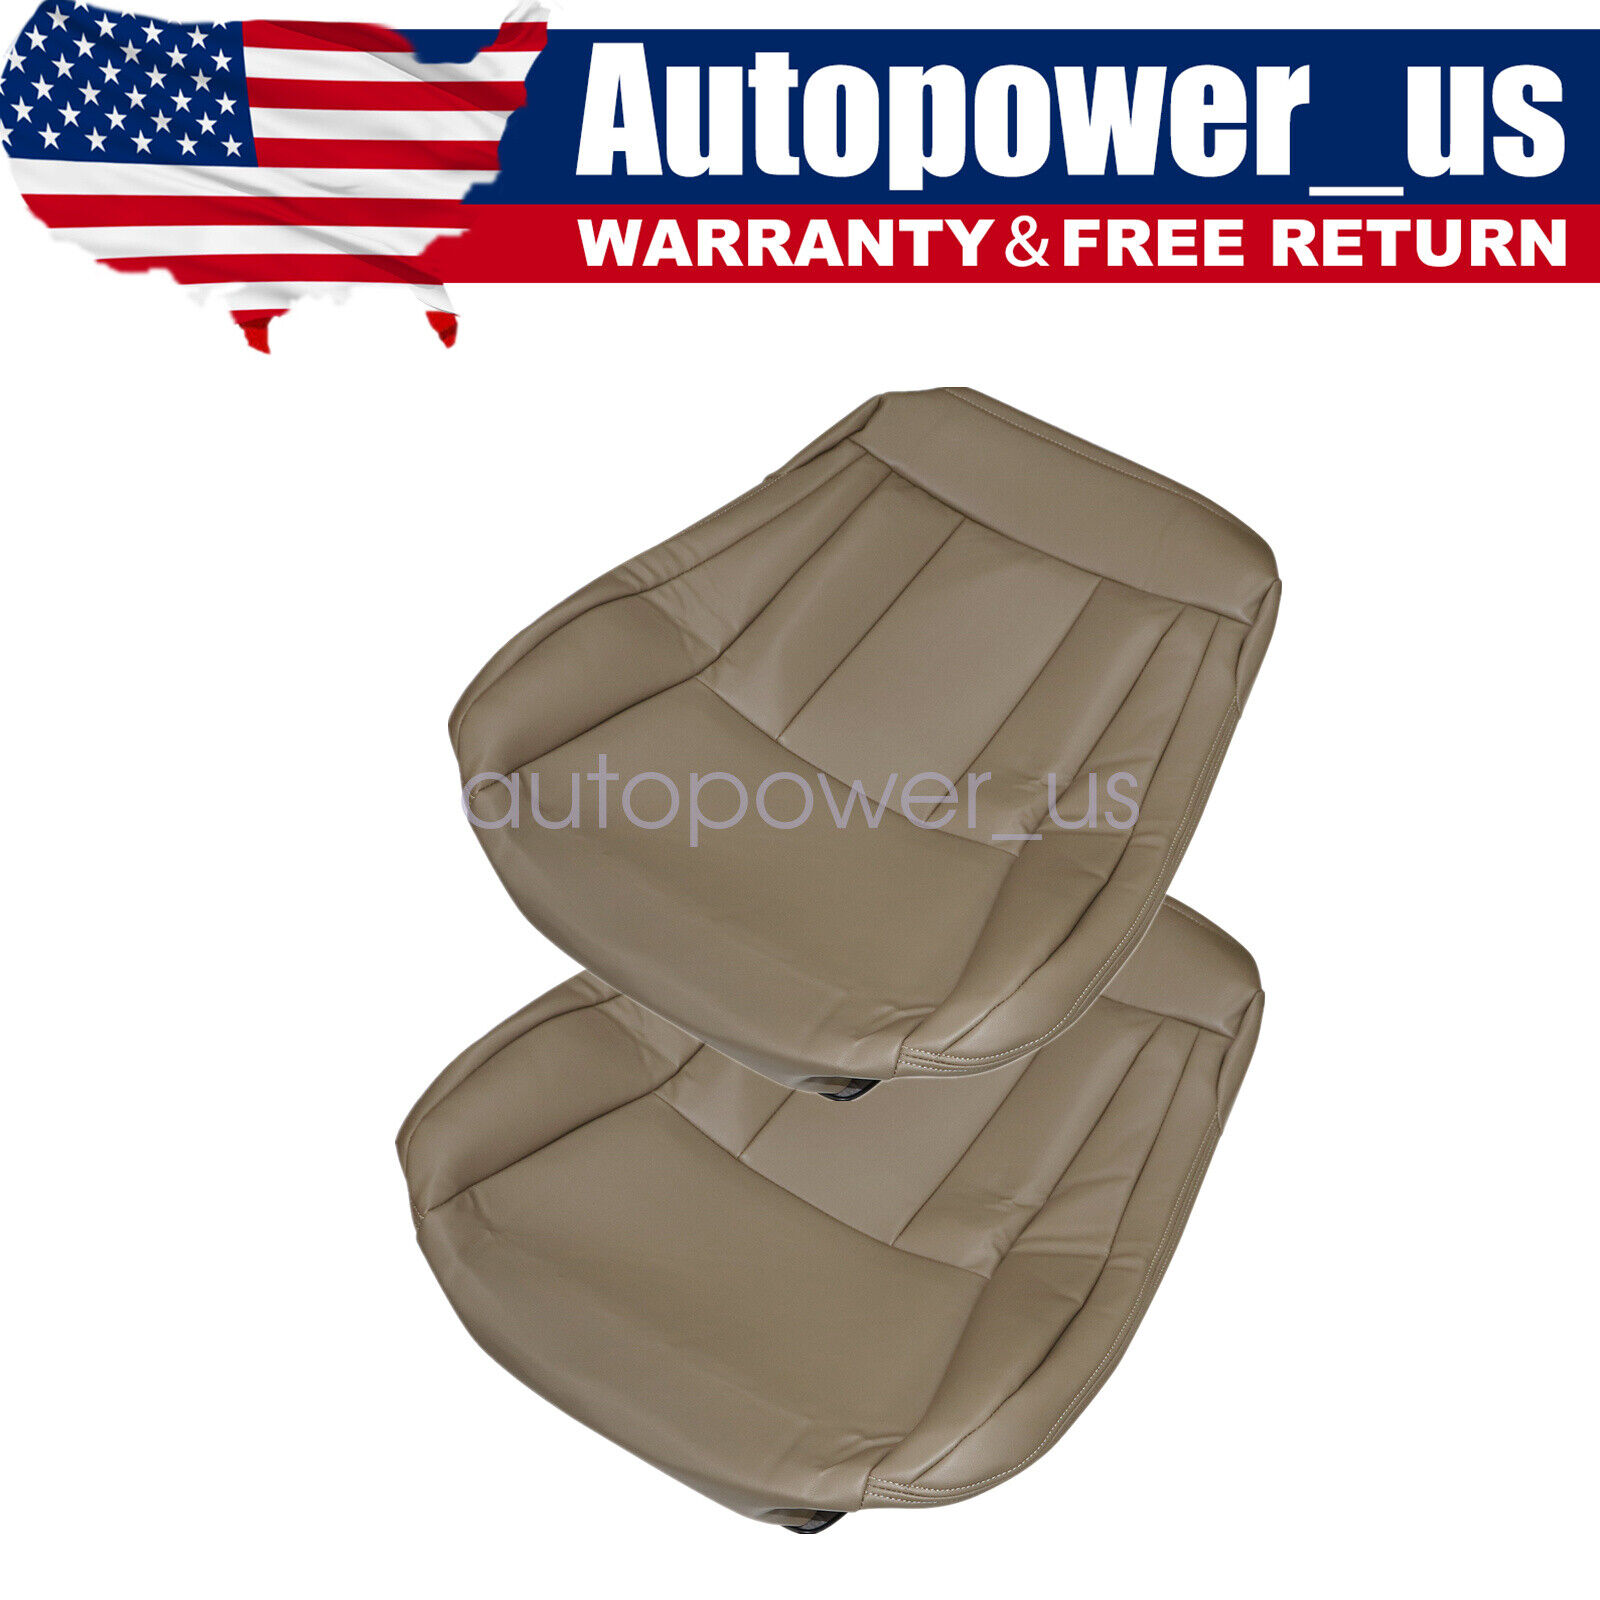 For 1996-02 Toyota 4Runner Driver & Passenger Bottom Leather Seat Cover Oak Tan